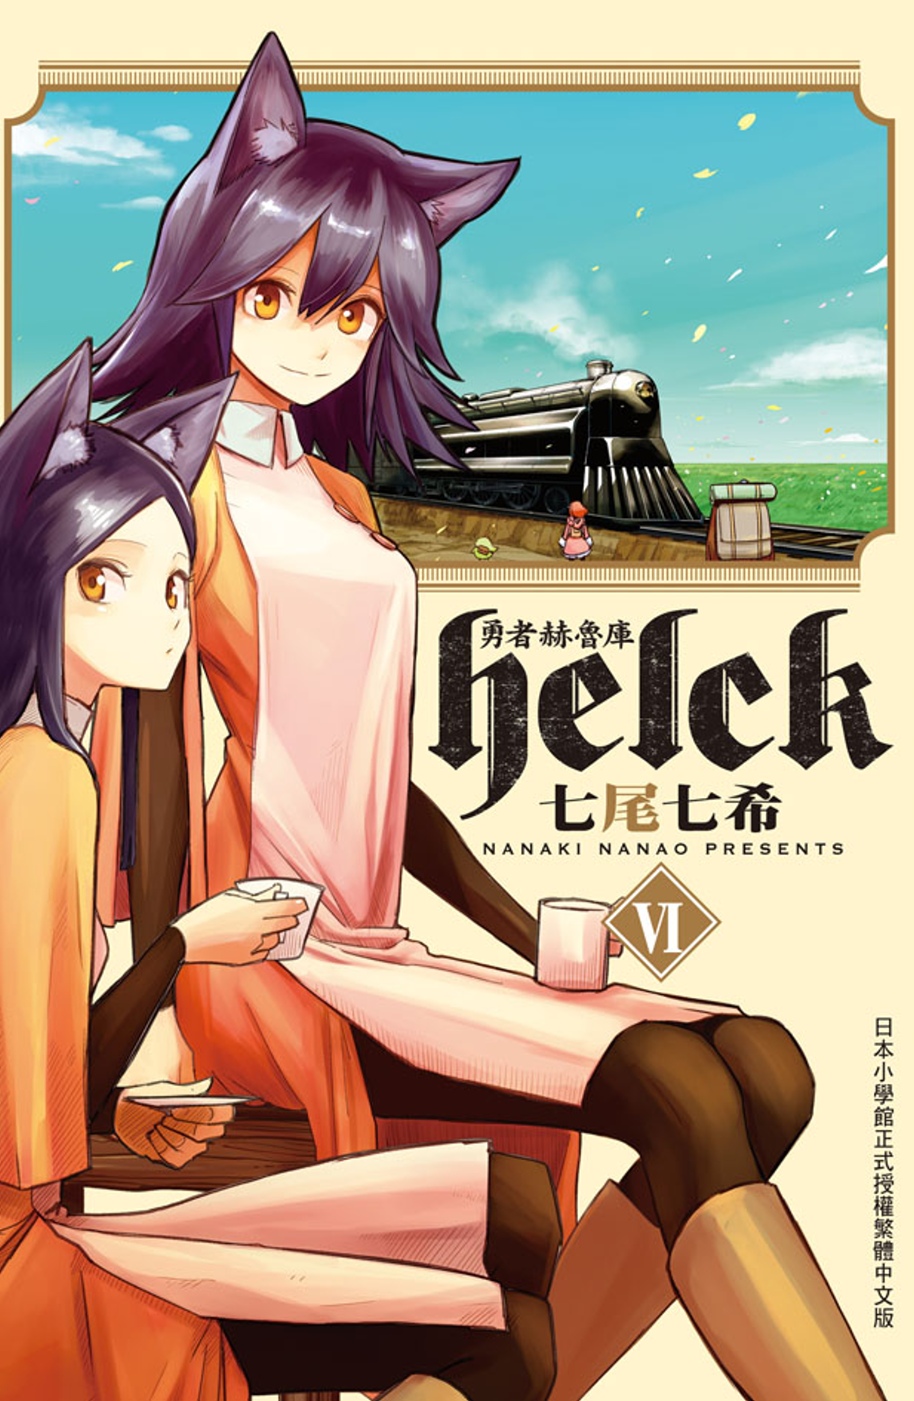 勇者赫魯庫-Helck 6